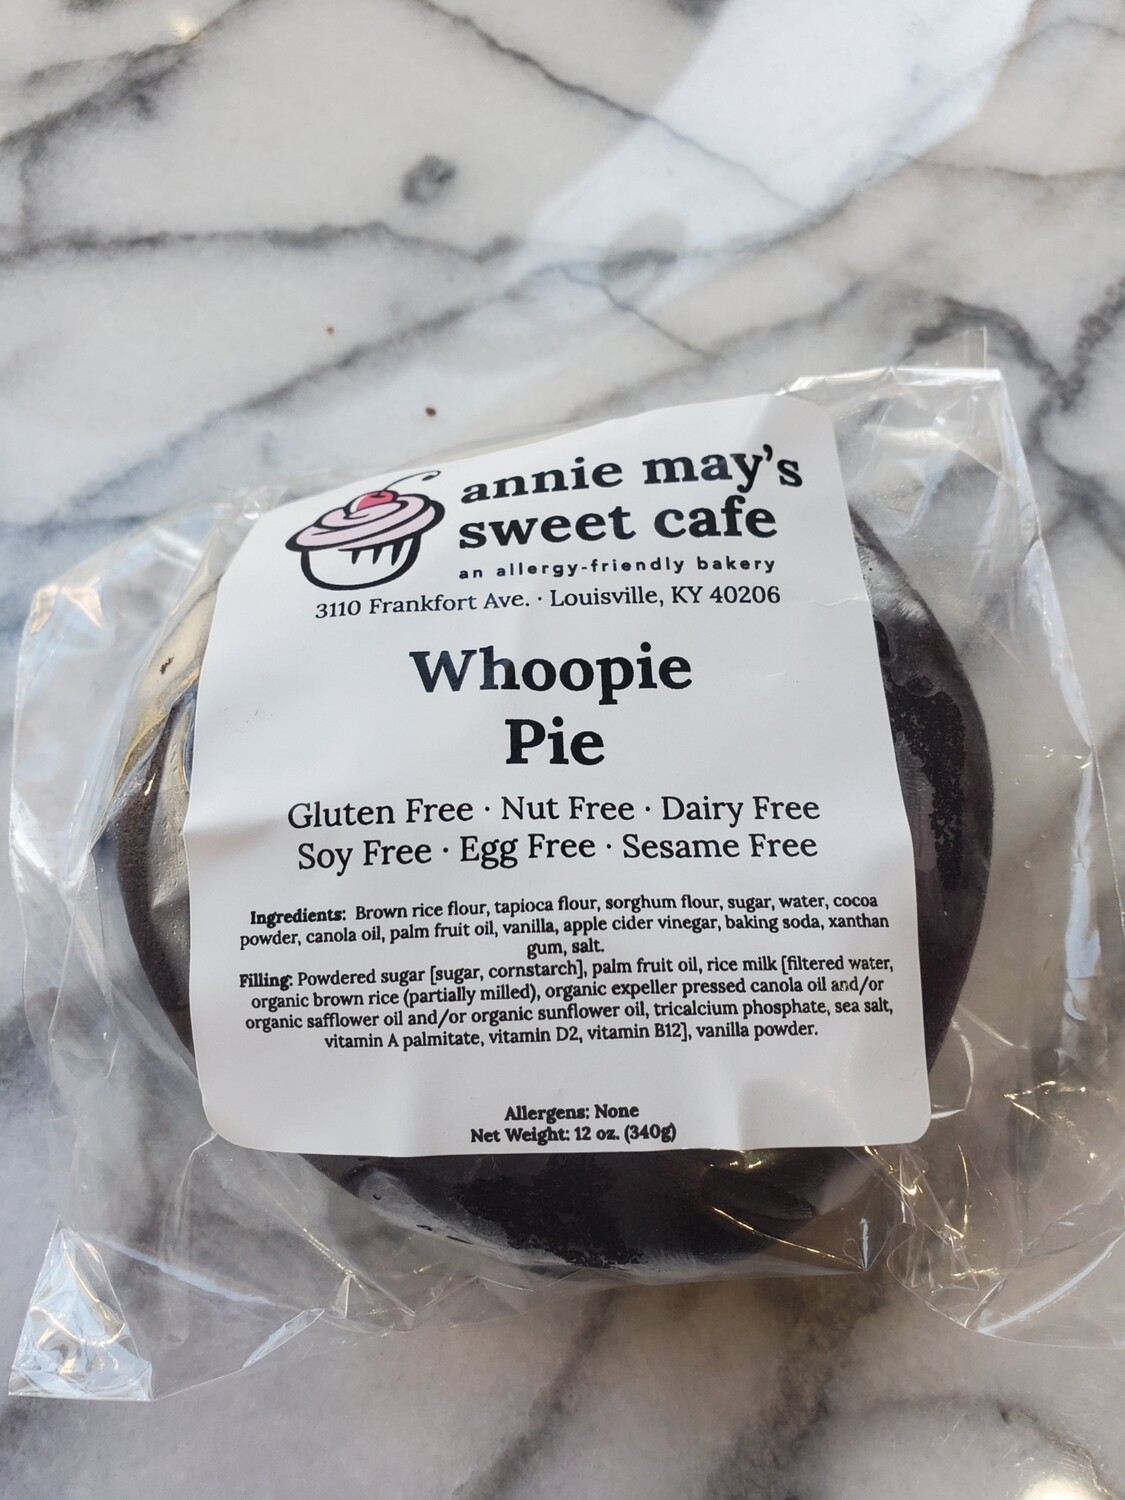 Whoopie pies- half dozen